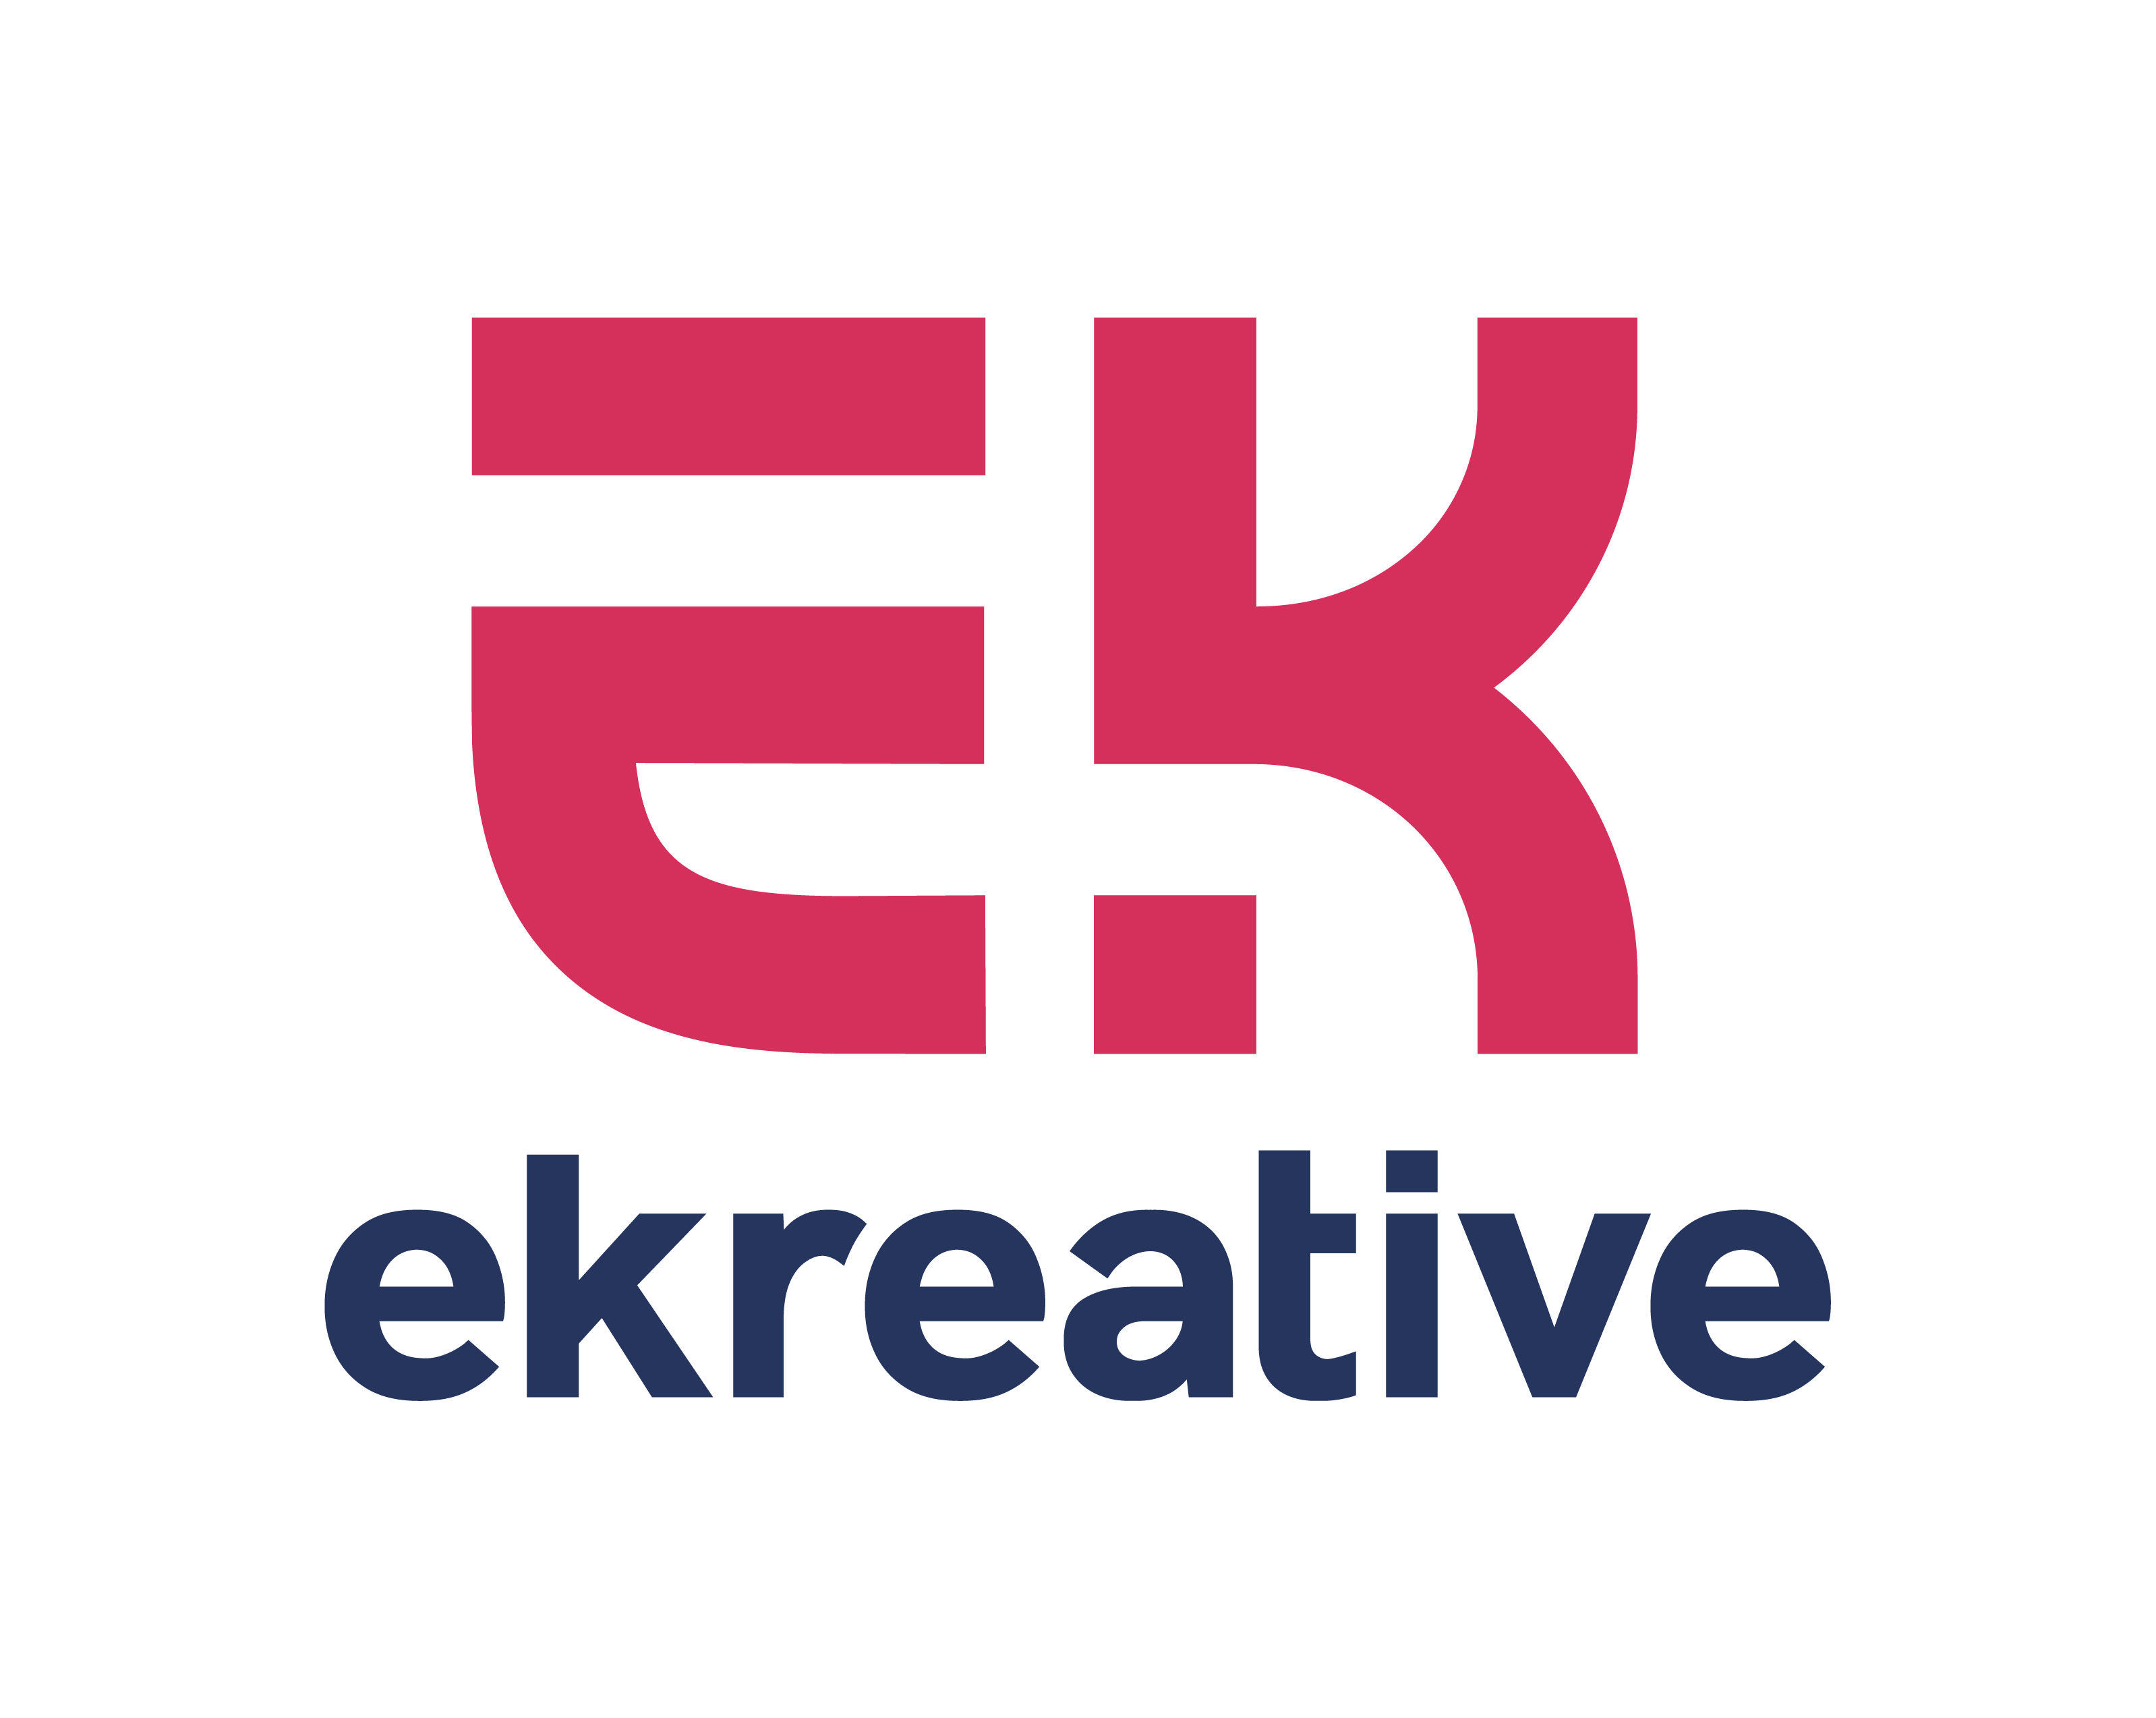 Ekreative logo